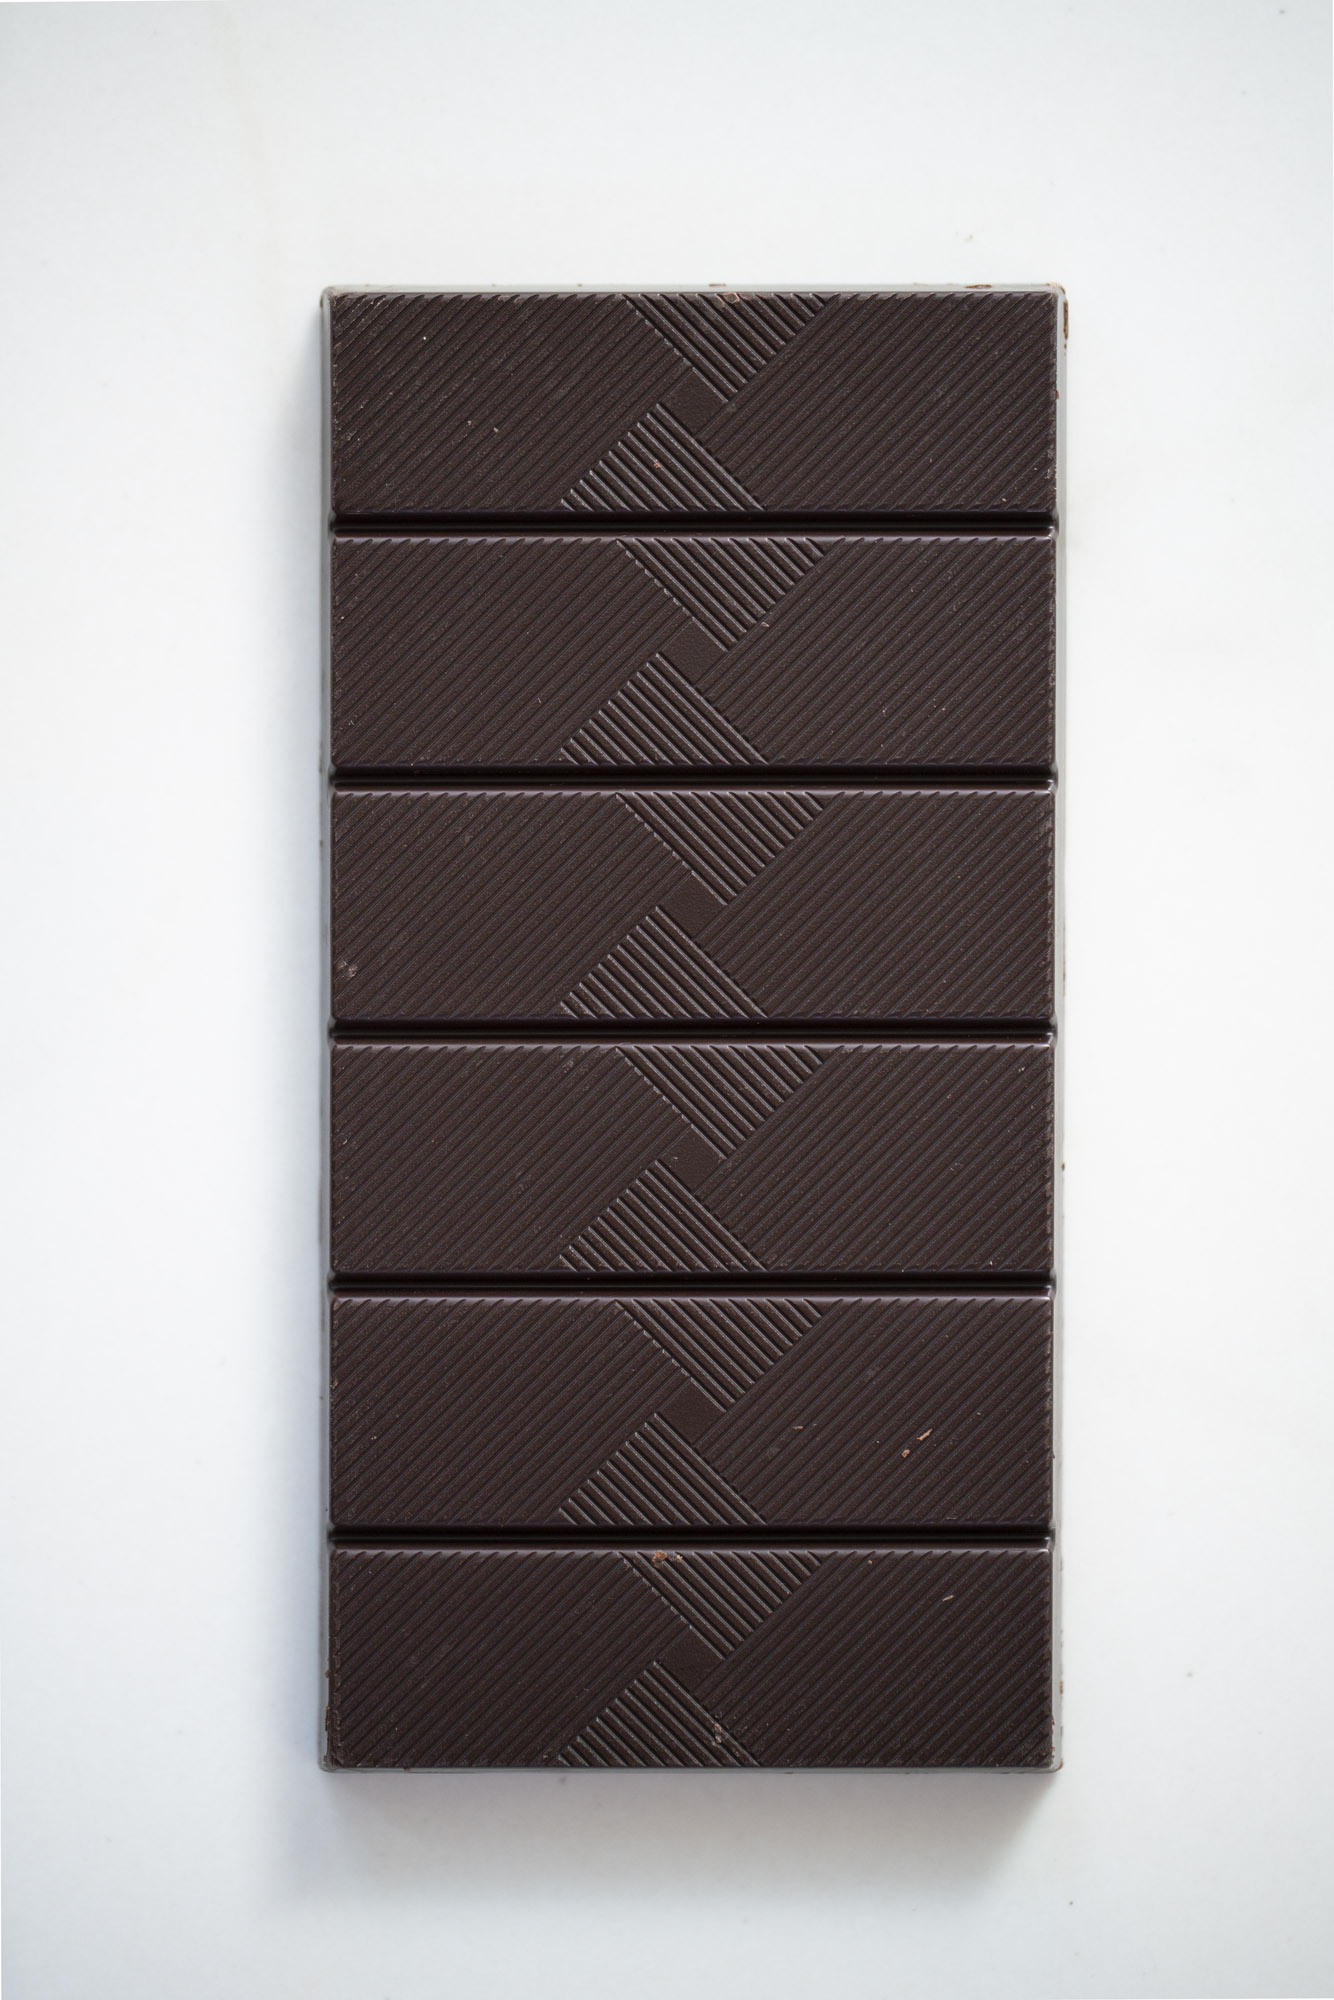 Tablette Superchoc Noir 88%, chocolat belge et bio de Supersec